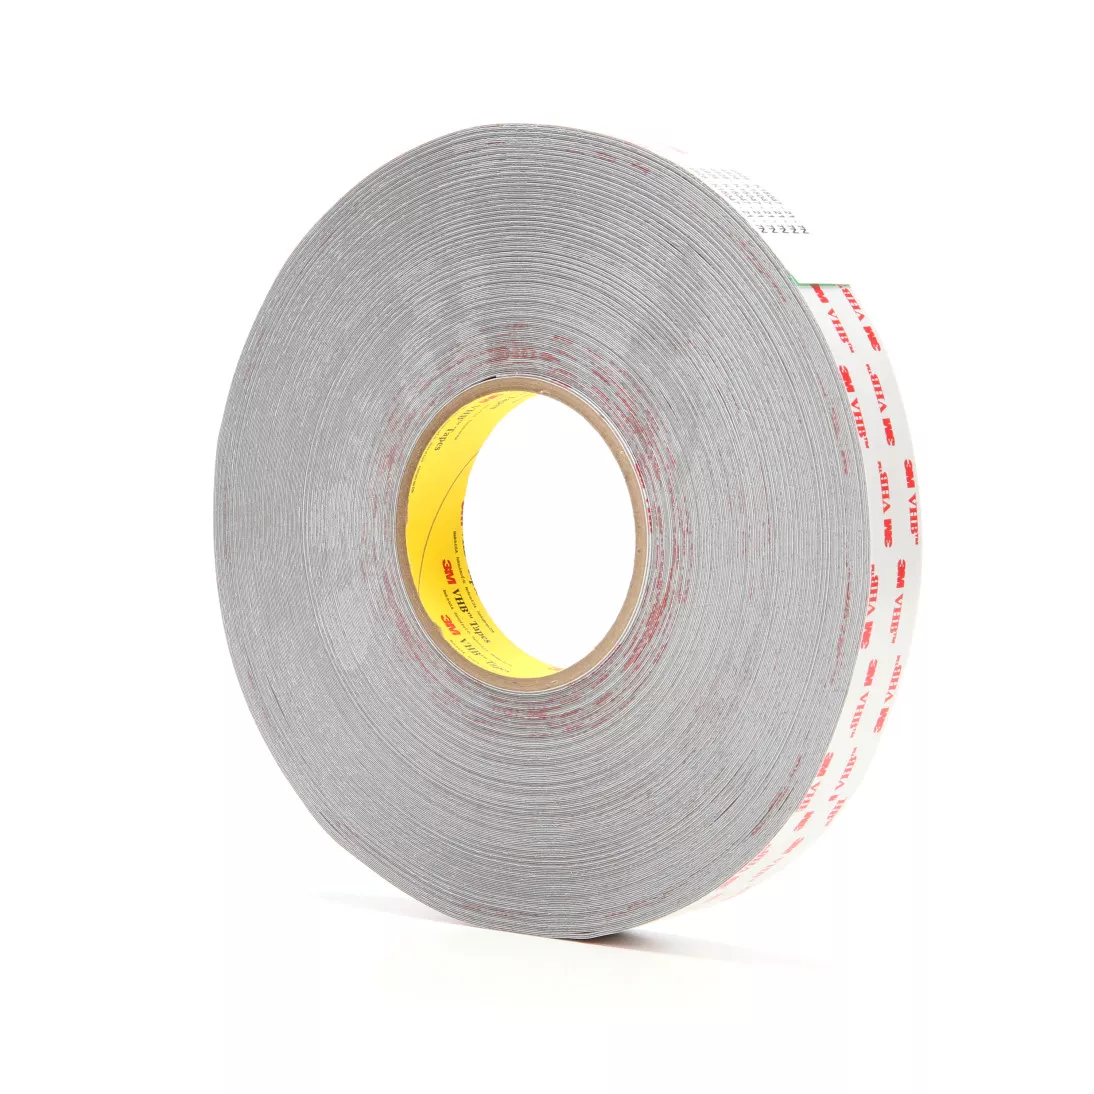 3M™ VHB™ Tape 4926, Gray, 1 in x 72 yd, 15 mil, 9 rolls per case